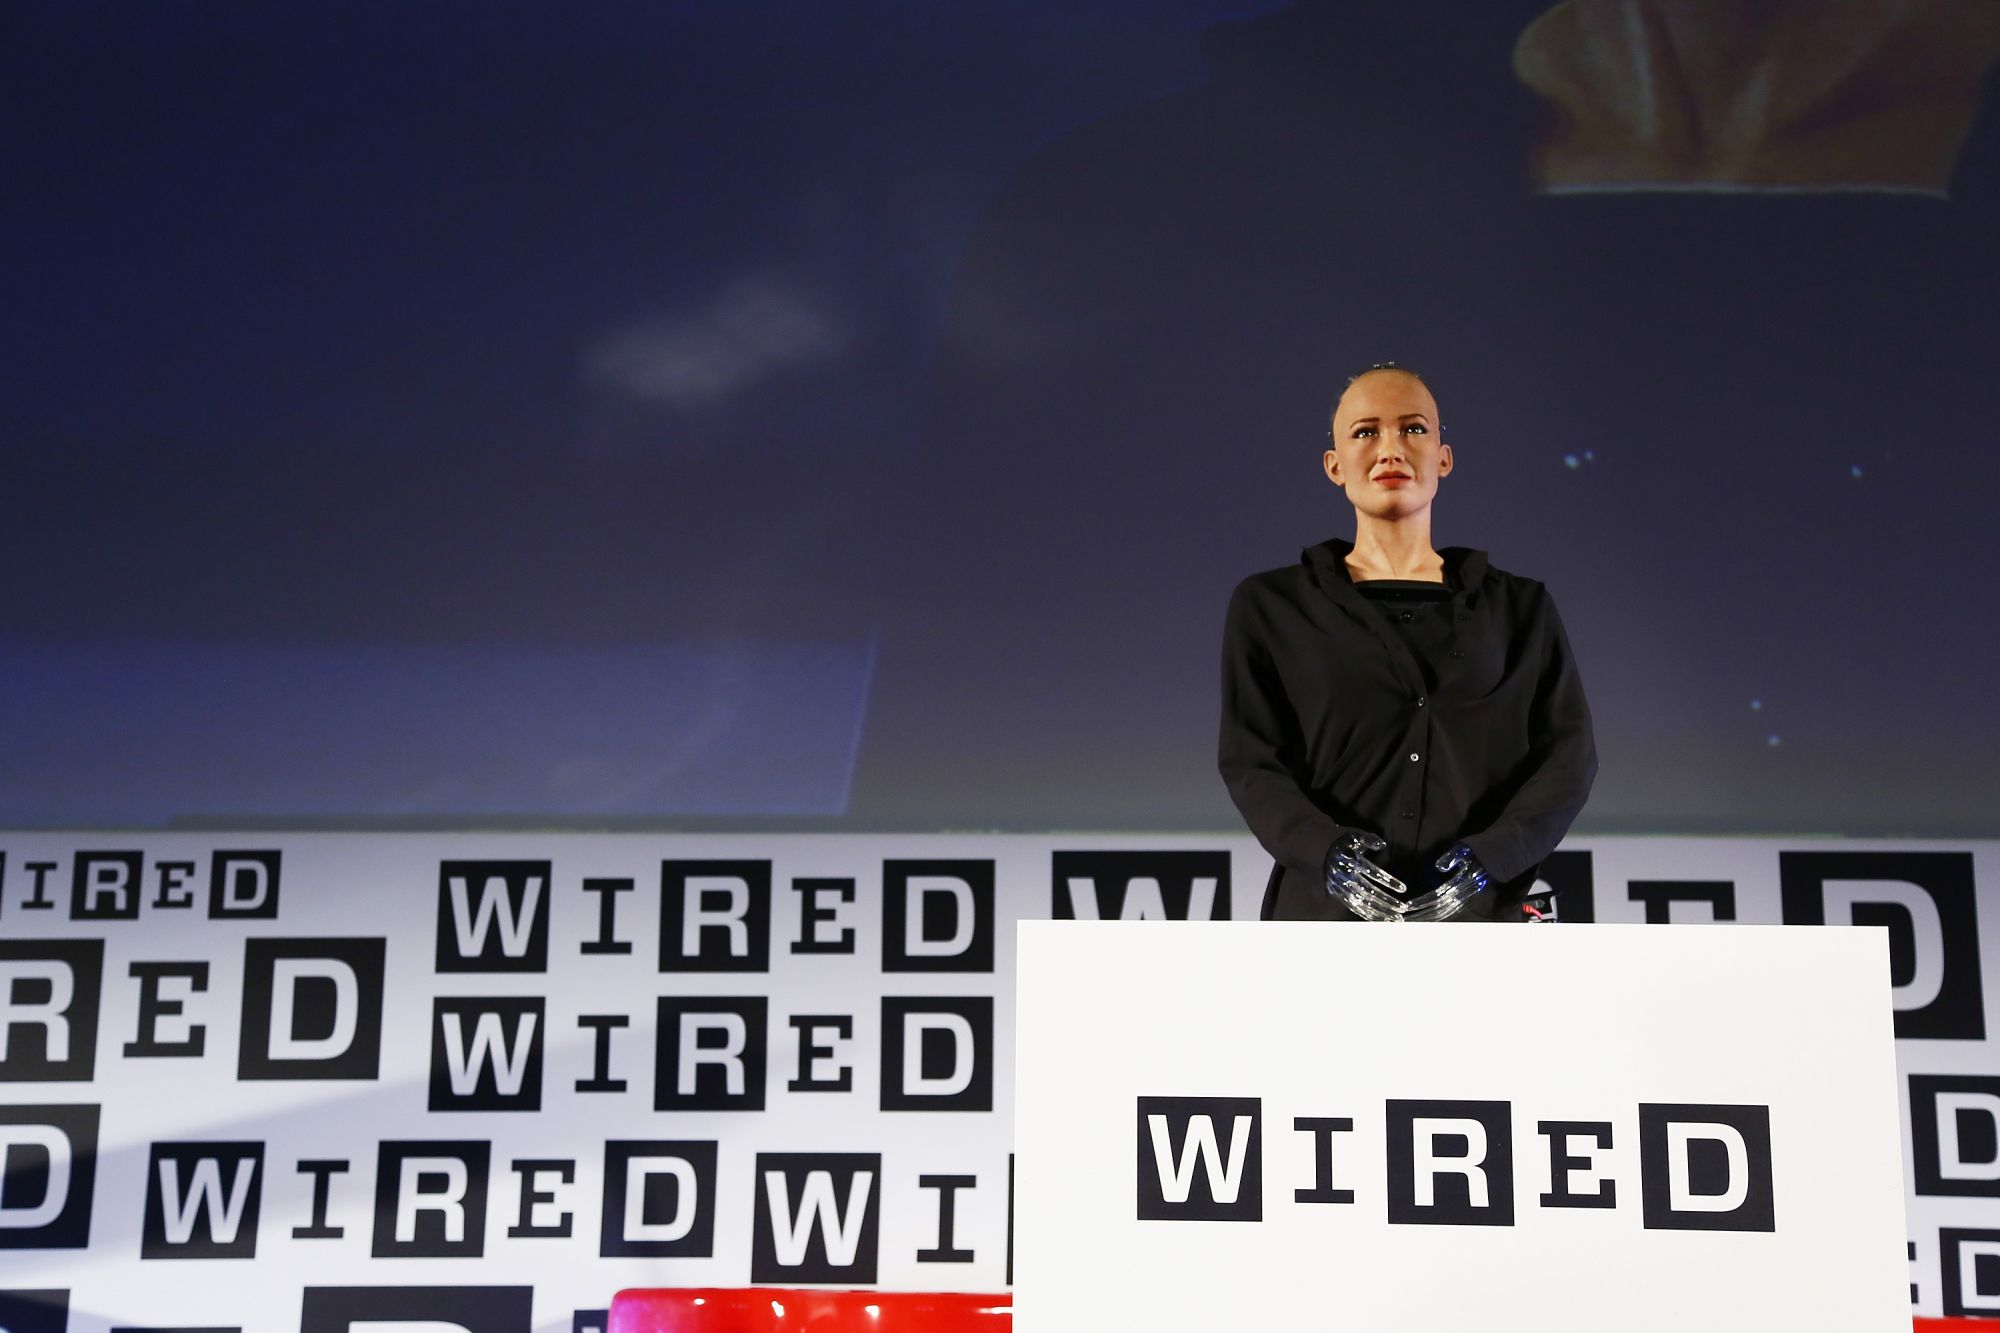 Ecco Sophia, il robot umanoide si mostra al Wired Next Fest